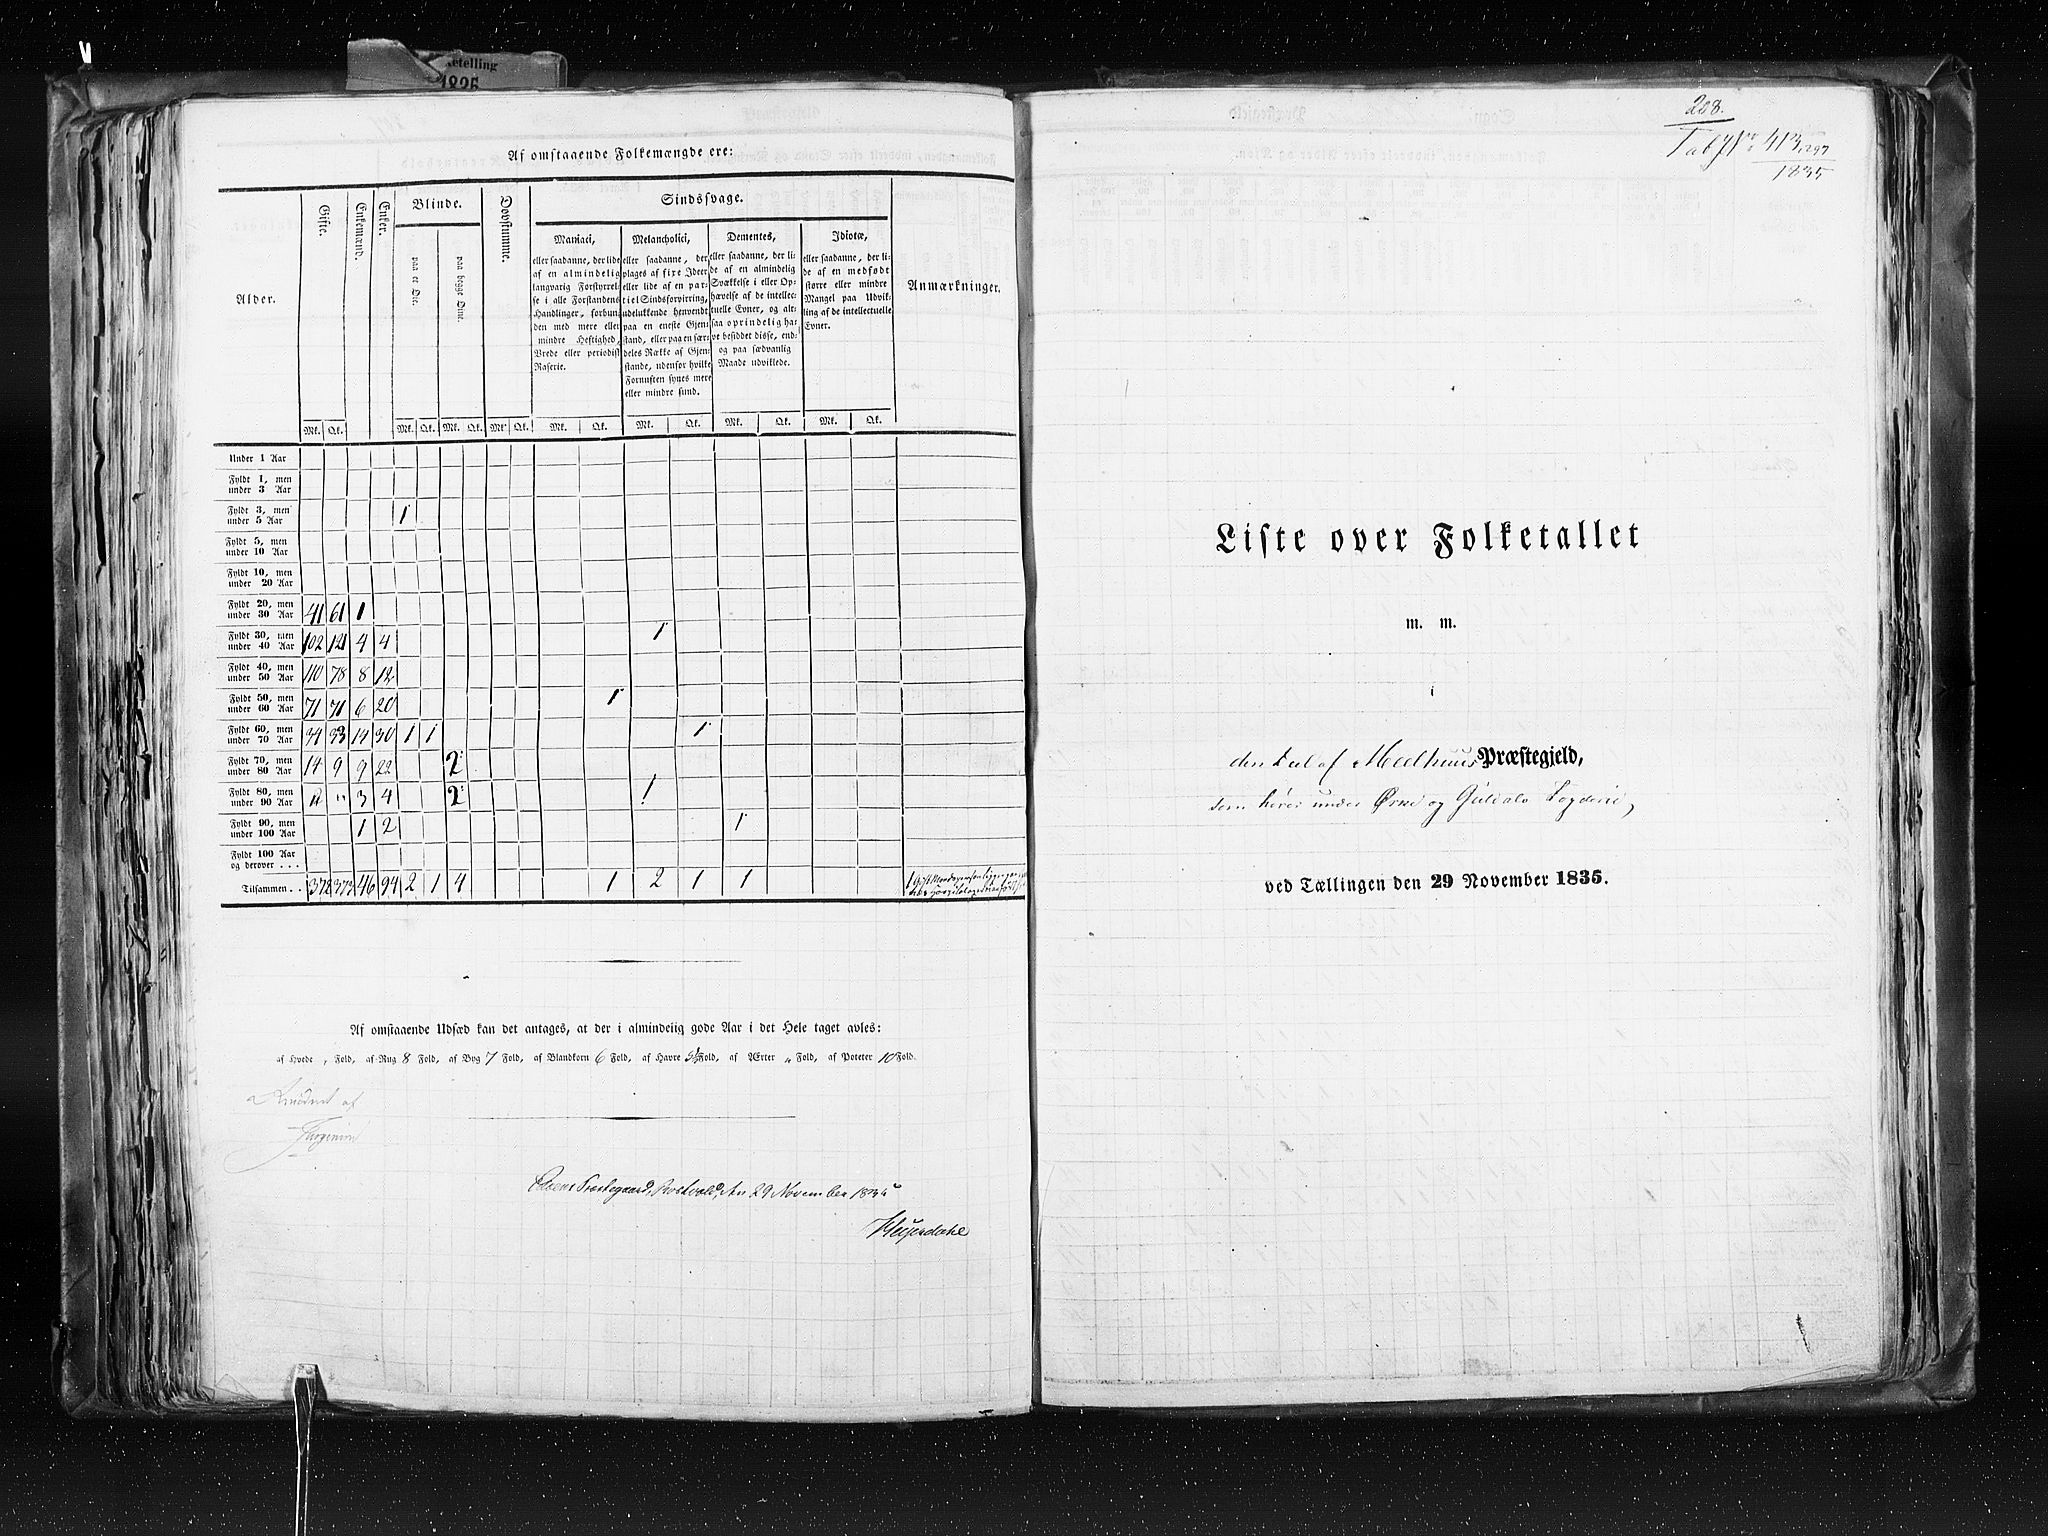 RA, Census 1835, vol. 8: Romsdal amt og Søndre Trondhjem amt, 1835, p. 208